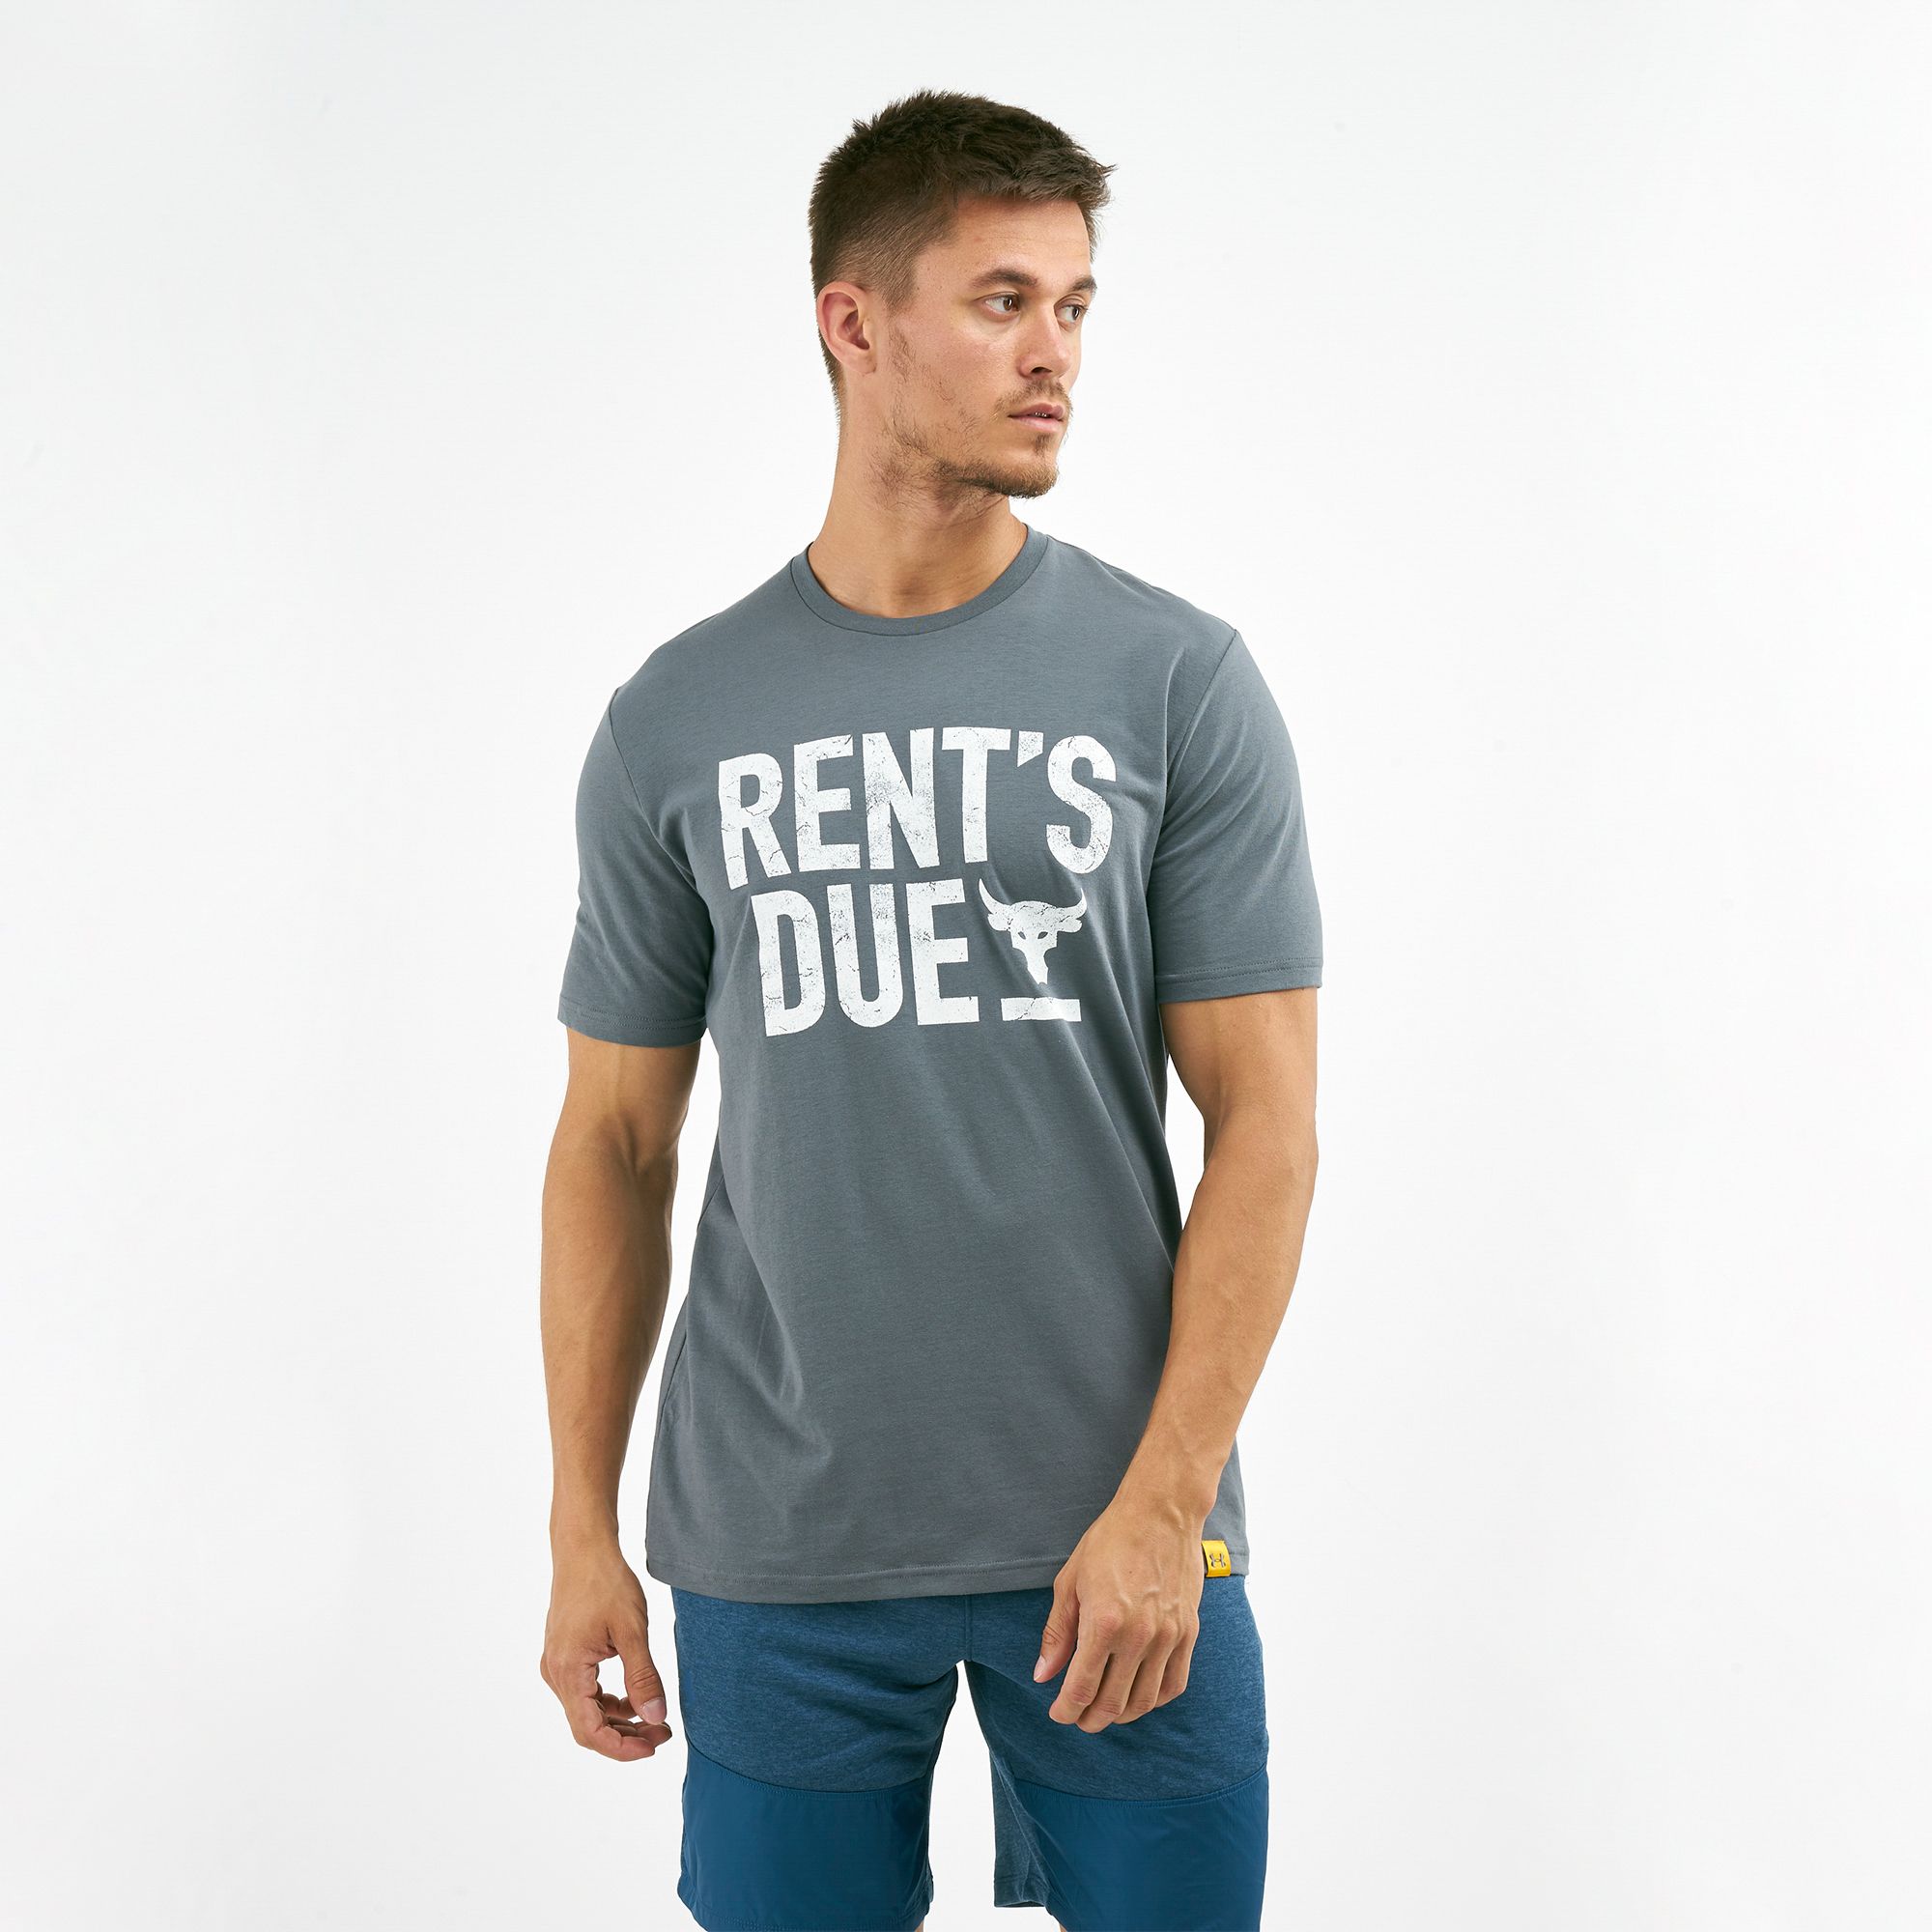 rents due rock shirt